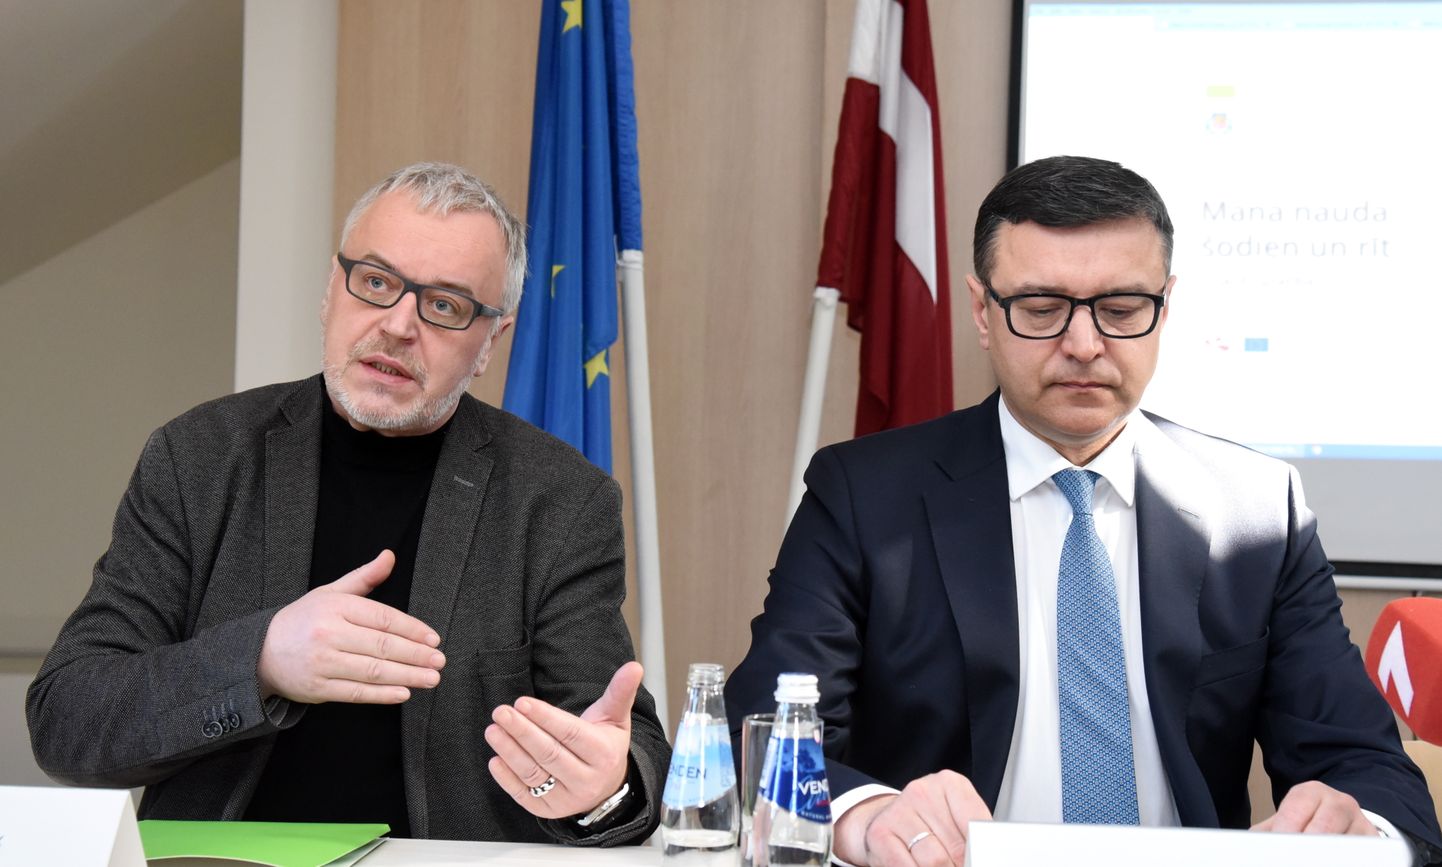 Labklājības ministrijas Komunikācijas nodaļas sabiedrisko attiecību speciālists Egils Zariņš (no kreisās) un labklājības ministrs Jānis Reirs; 2018. gada 28. marts.